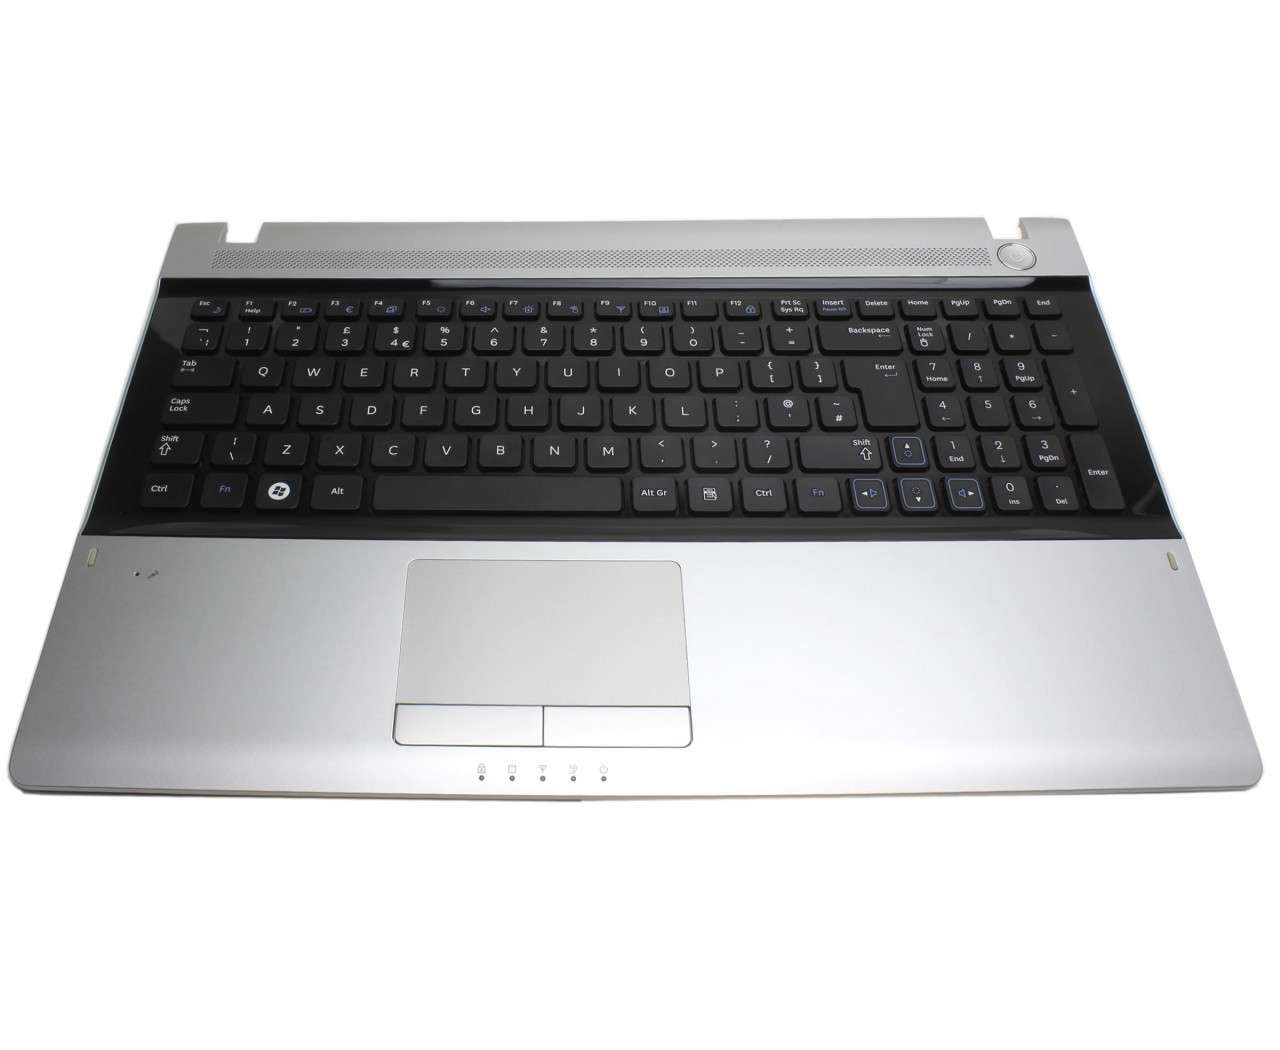 Tastatura Samsung RV515 neagra cu Palmrest argintiu